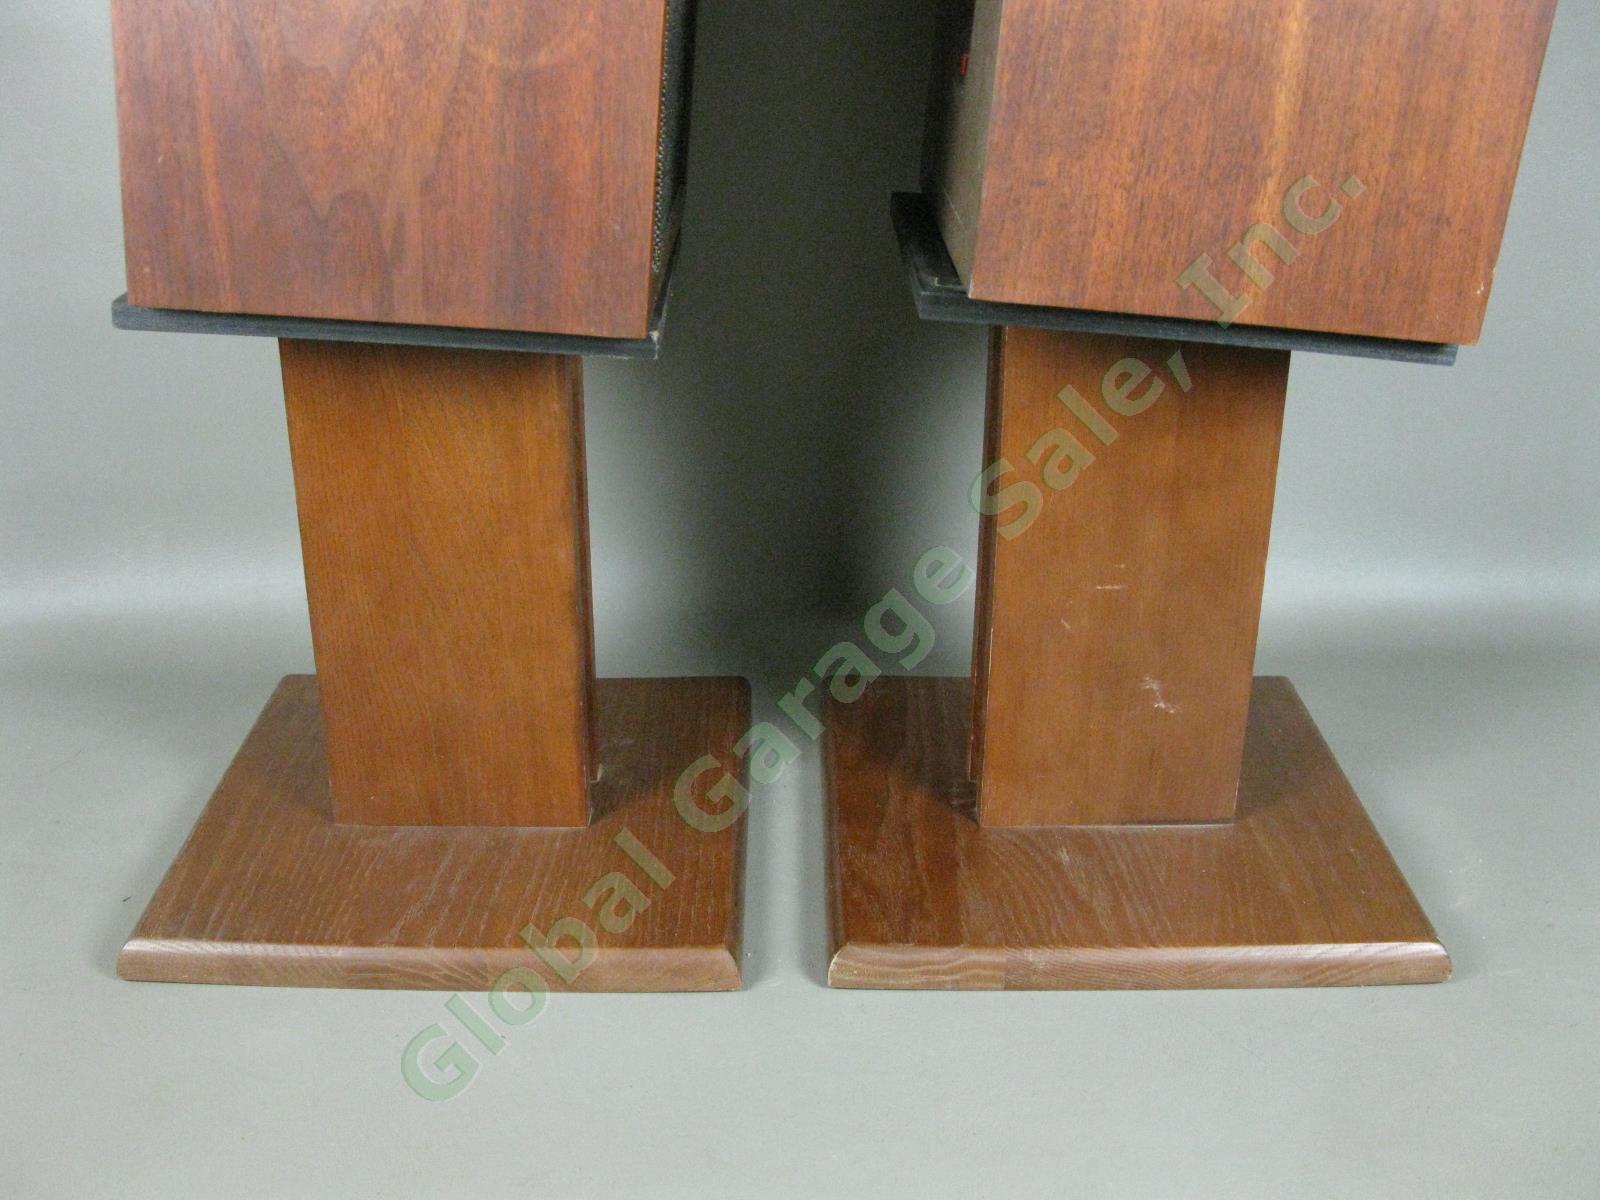 Vintage Pair EPI Epicure M50 Walnut Cabinet Bookshelf Speakers + Stands 12973/4 4